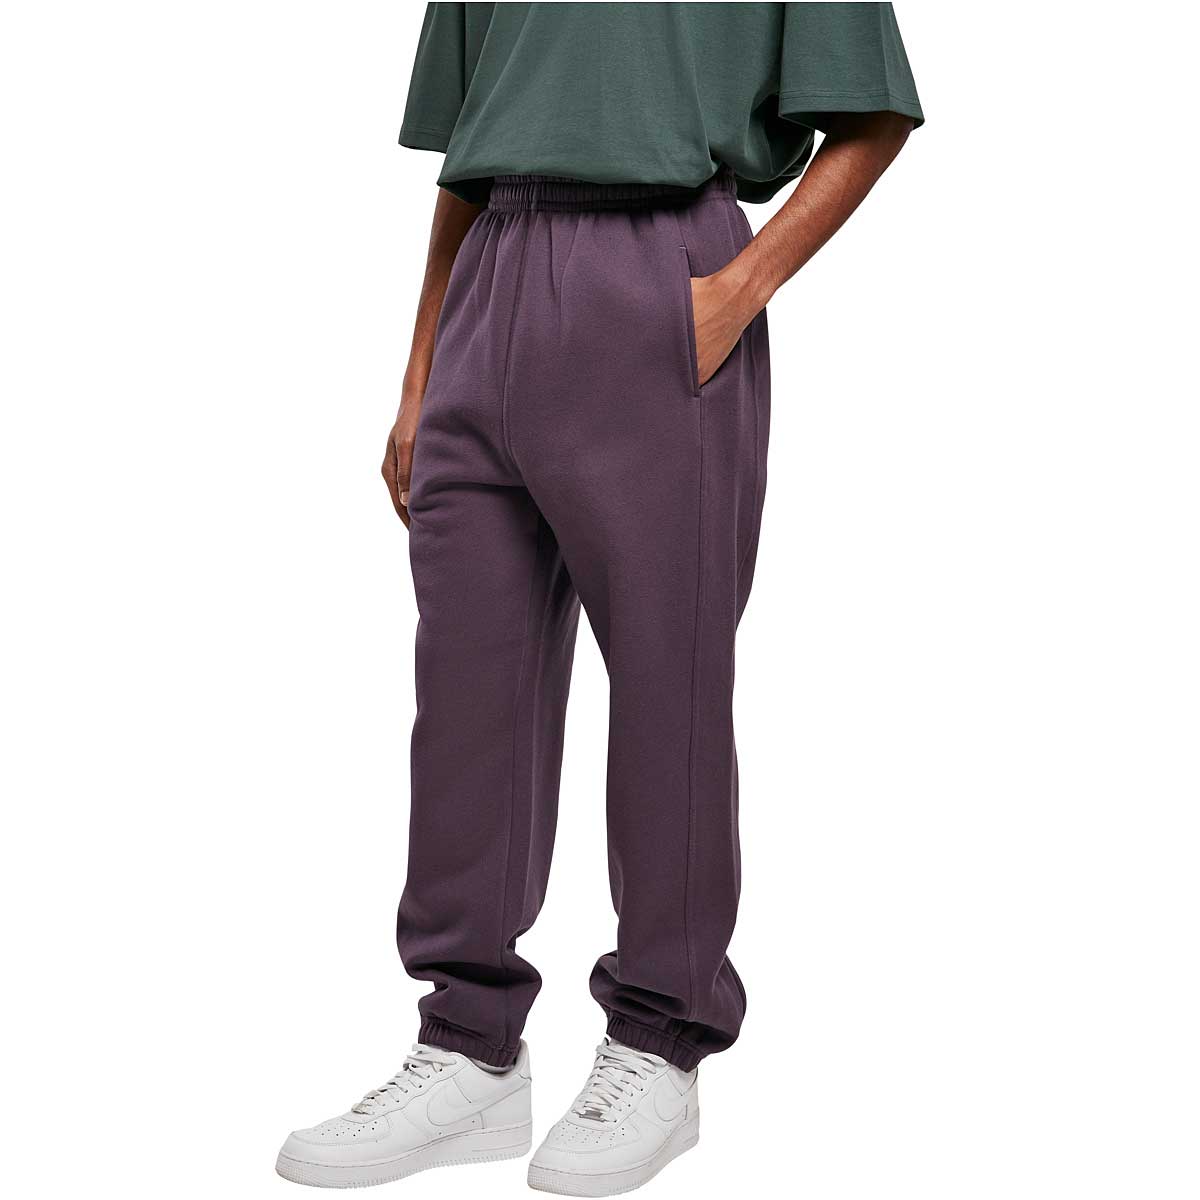 Urban Classics Sweatpants, Purplenight